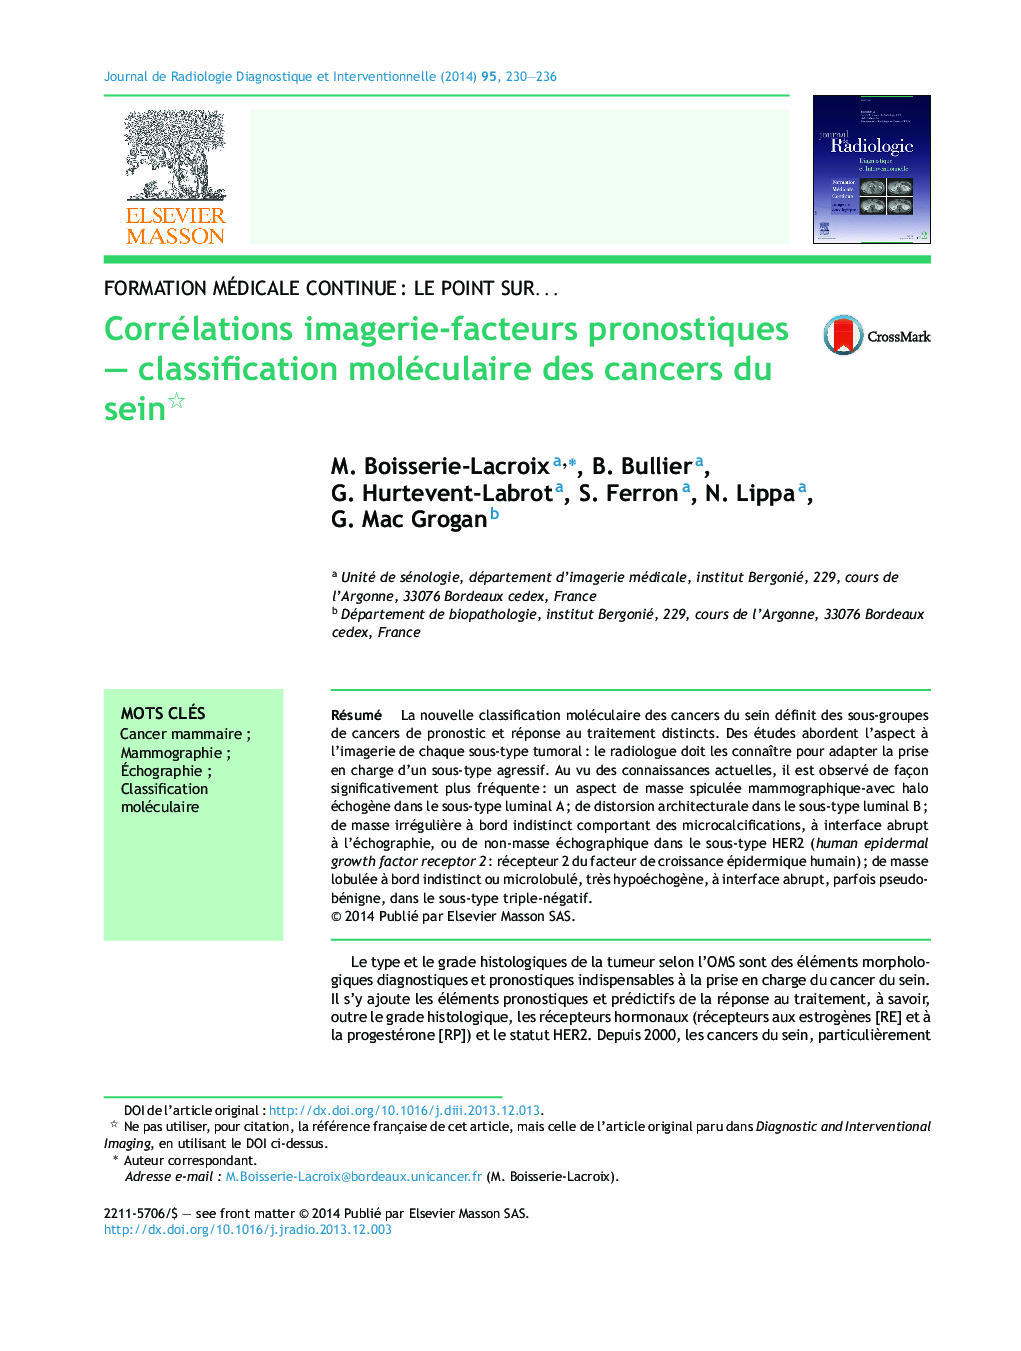 Corrélations imagerie-facteurs pronostiques - classification moléculaire des cancers du sein